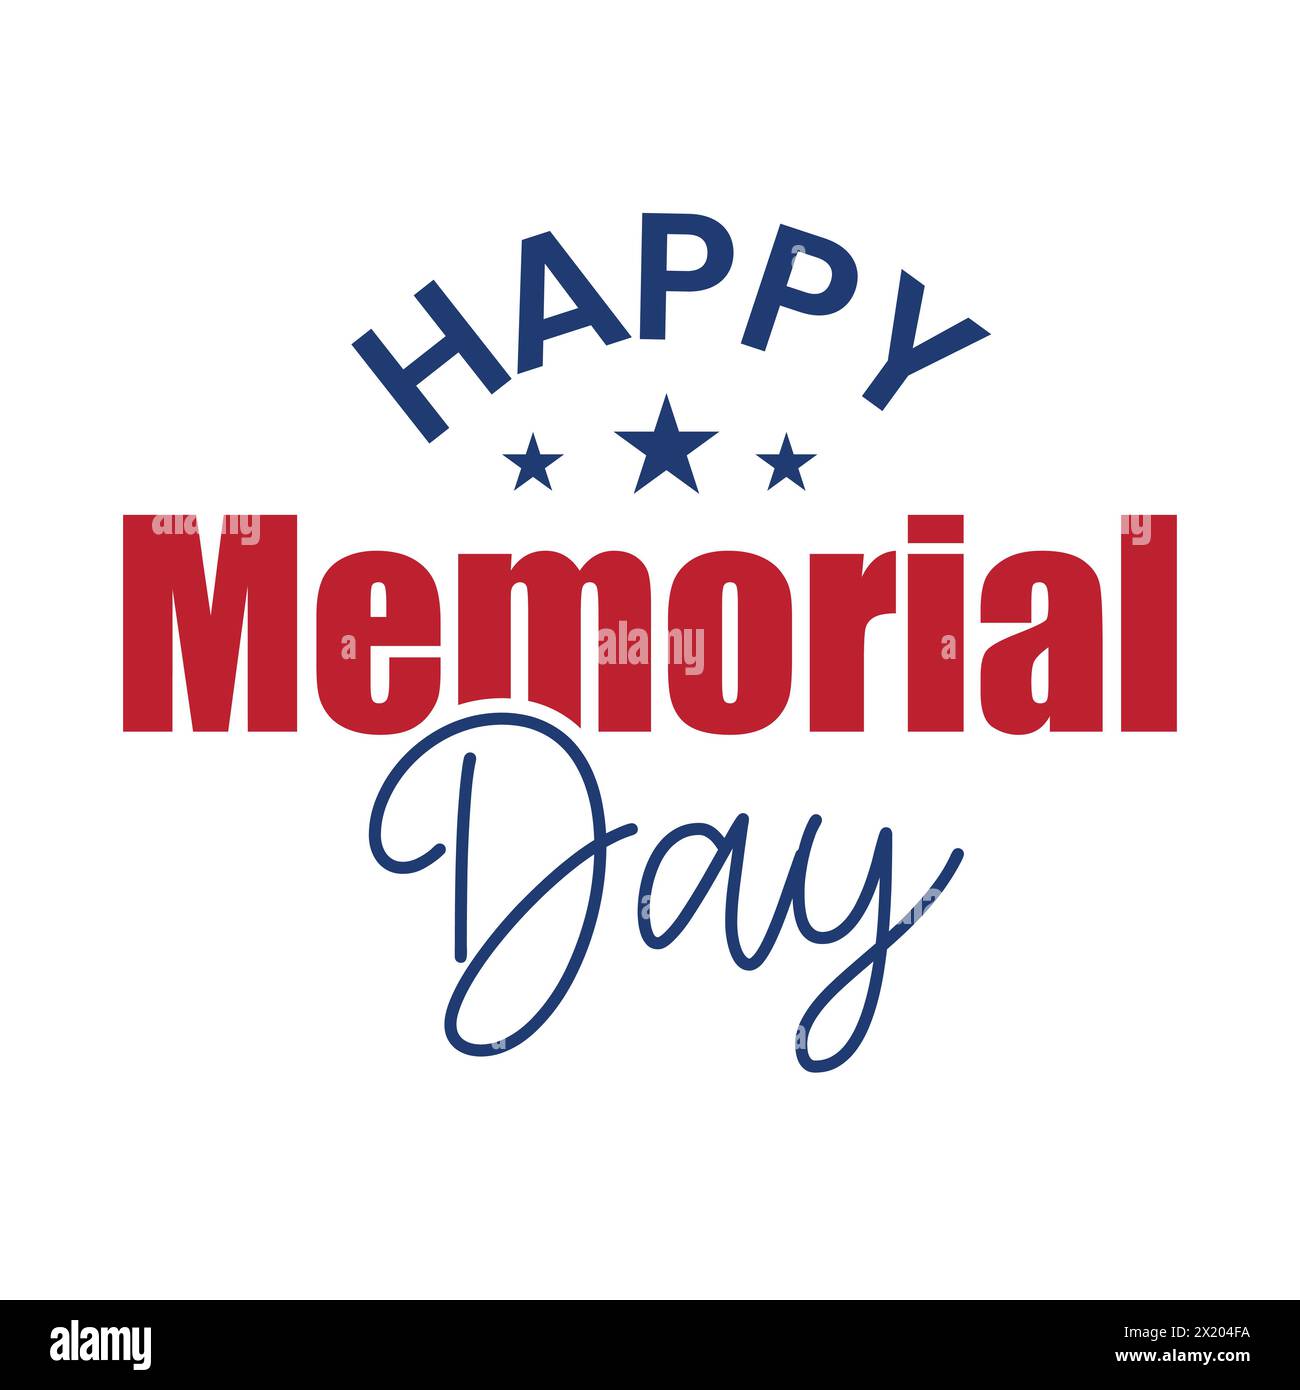 Grußkarte mit Happy Memorial Day Typografie. National American Holiday Illustration mit US-Flagge Farbe rot und blau. Amerikanischer Nationalfeiertag Stock Vektor